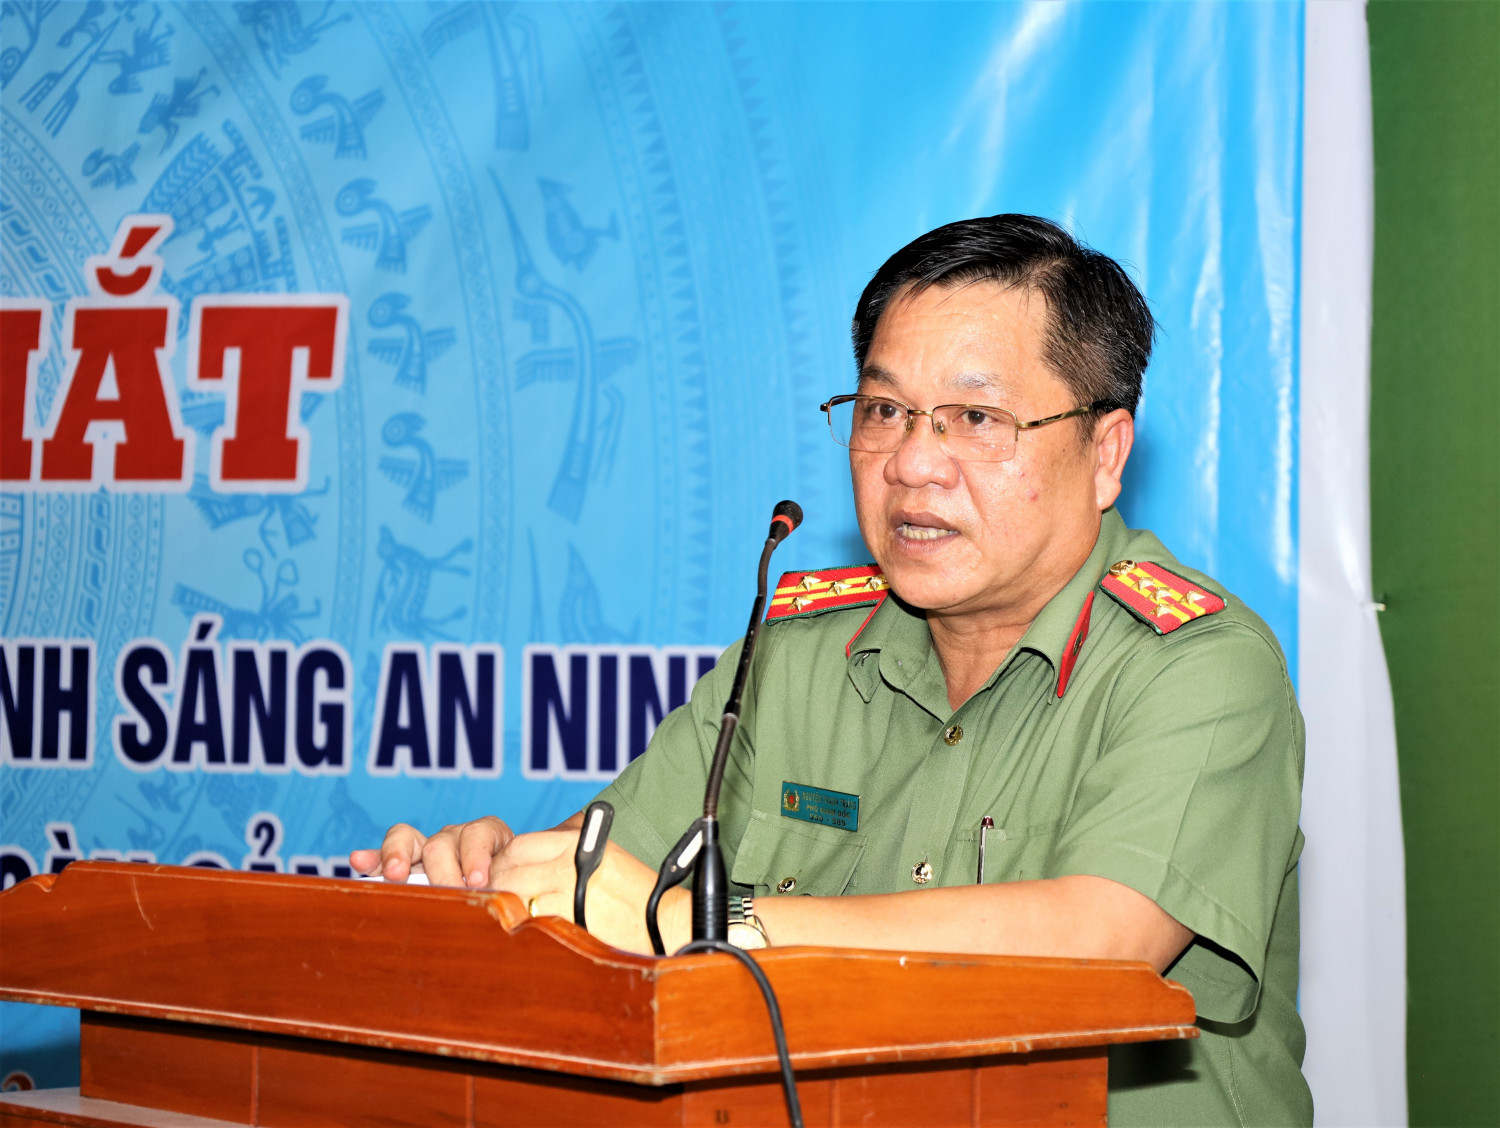 Đại tá Nguyễn Thanh Tràng, Phó Giám đốc Công an tỉnh phát biểu chỉ đạo tại buổi ra mắt mô hình